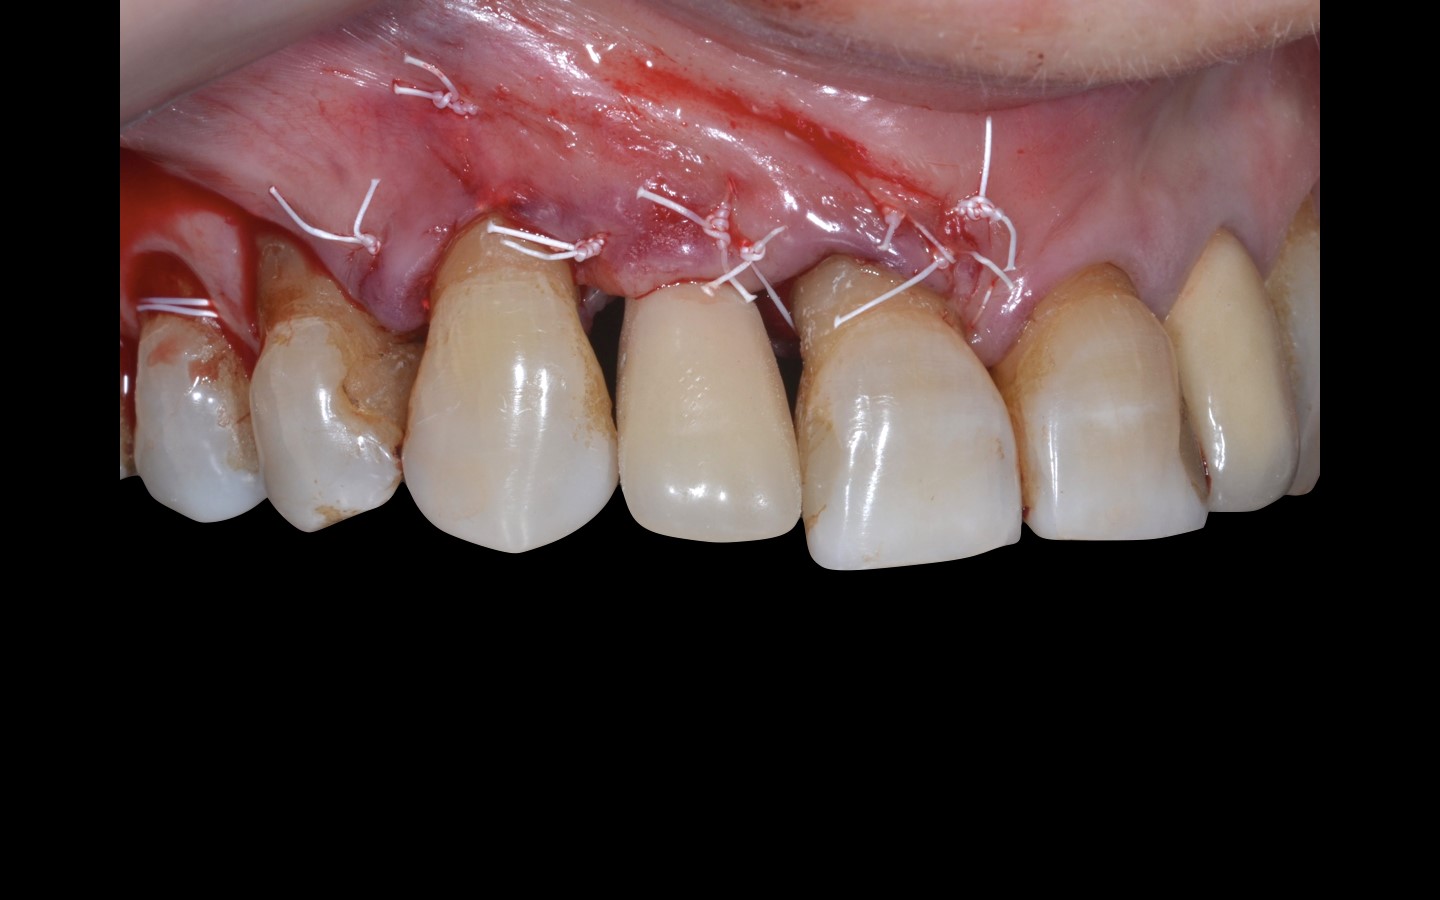 image17 - Reabilitação dento-alveolar com implante Arcsys, enxerto conjuntivo e substituto ósseo Nanosynt